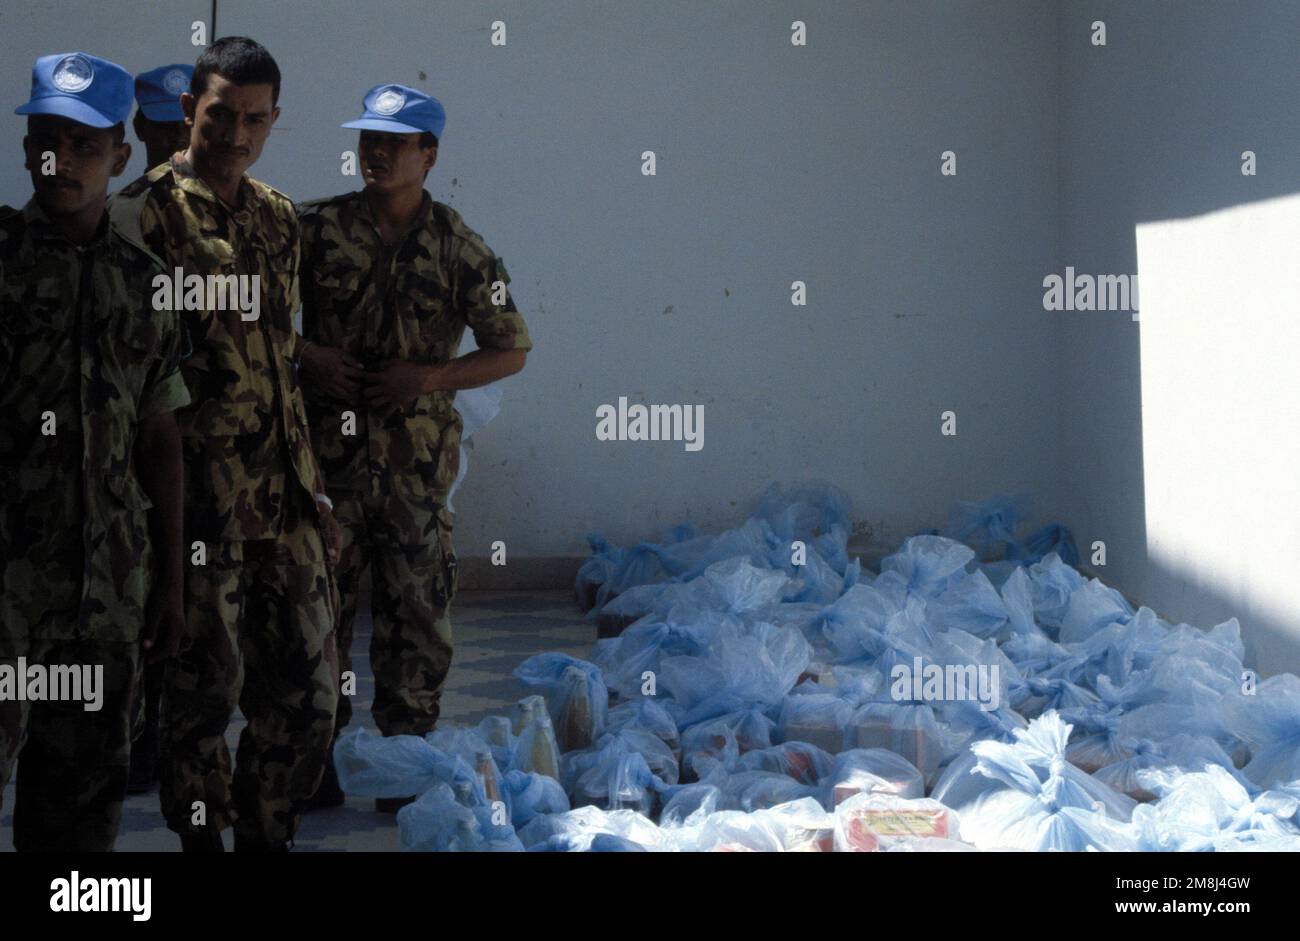 Nepalesische Soldaten bereiten sich darauf vor, Nahrungsmittel an die Somalier zu verteilen, die gegenüber von ihrem Lager wohnen. Die Nepalesen feiern den Geburtstag ihres Königs, indem sie denen helfen, die weniger Glück haben. Einsatzgebiet/Serie: UNOSOM II Basis: Mogadischu Land: Somalia (SOM) Stockfoto